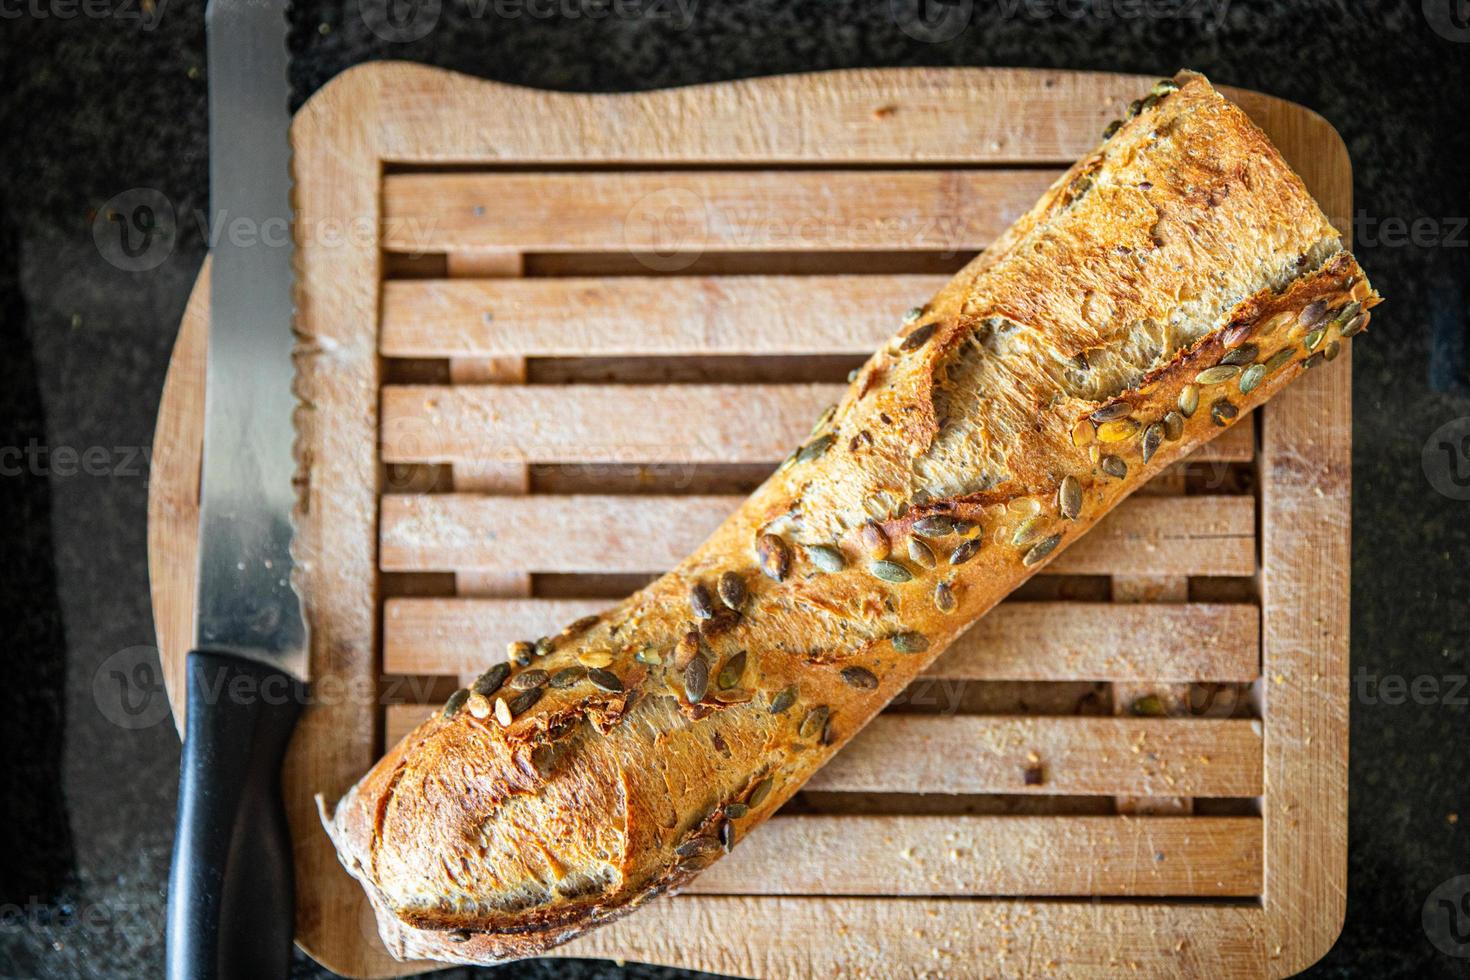 baguette semillas de calabaza pan fresco francés porción fresca comida saludable comida foto